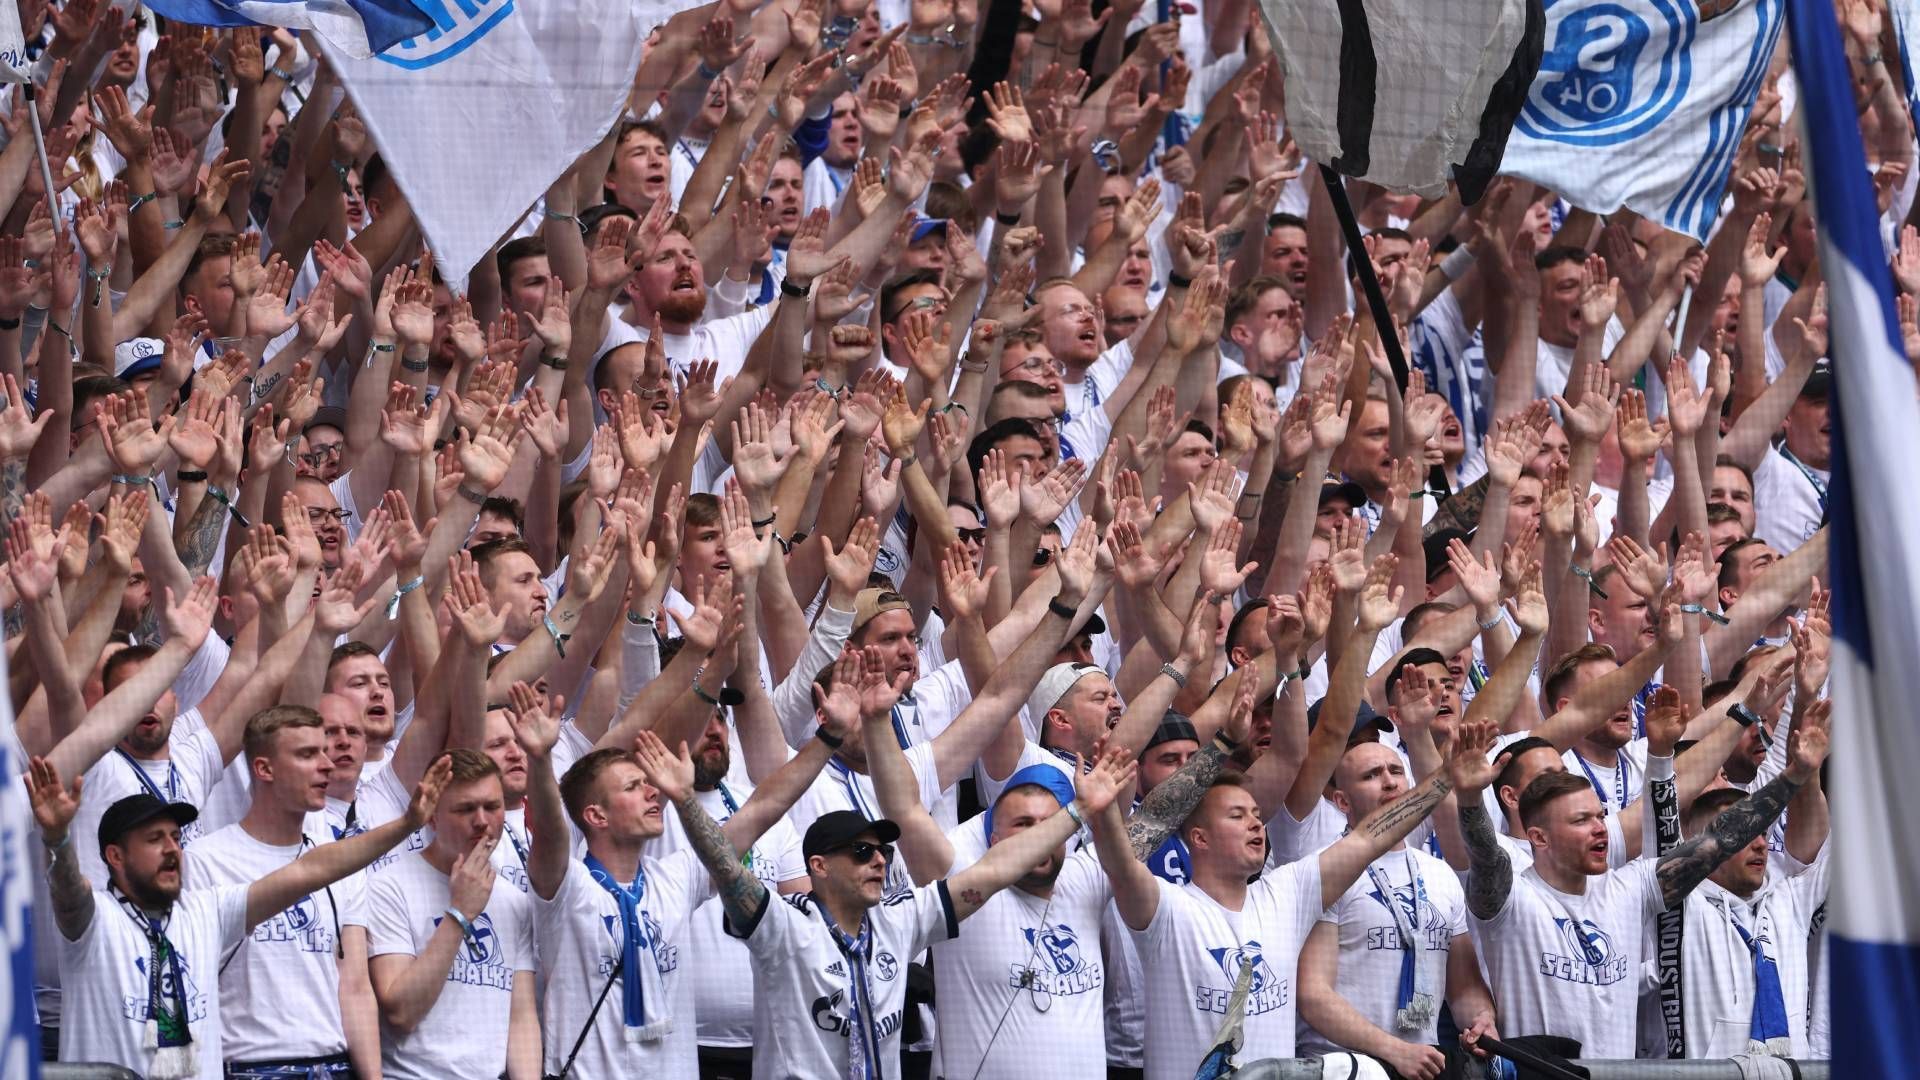 
                <strong>Schalke-Fans sorgen für tolle Bilder</strong><br>
                Die Schalker Fans sorgen für tolle Bilder. Unterrang ganz in Weiß, Oberrang ganz in Blau - die Anhänger stehen voll und ganz hinter ihrem Klub. 
              